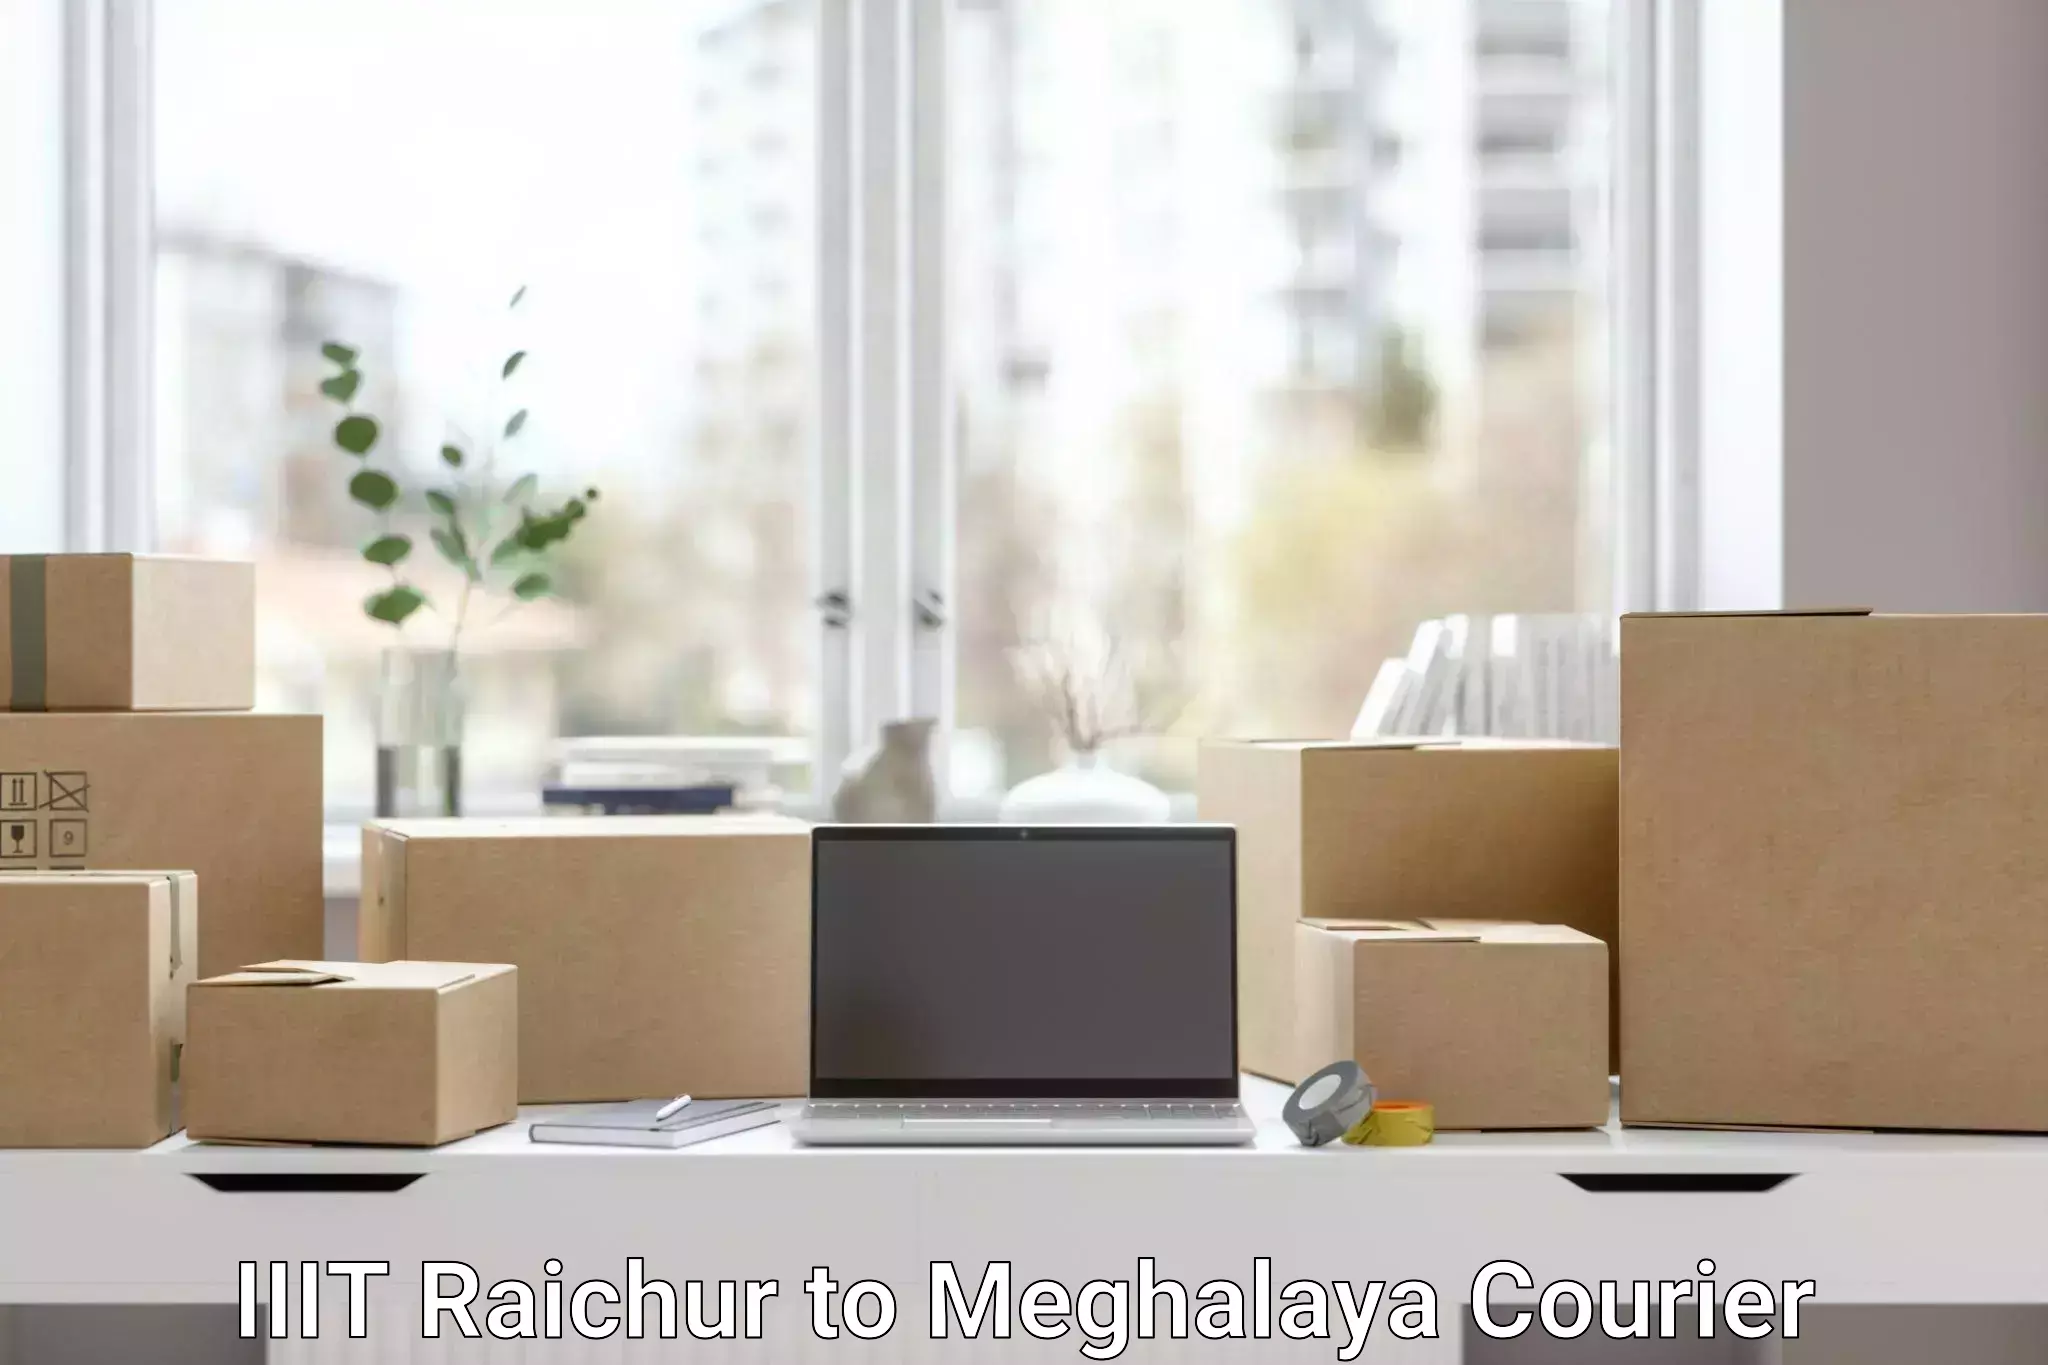 Express mail solutions IIIT Raichur to Meghalaya